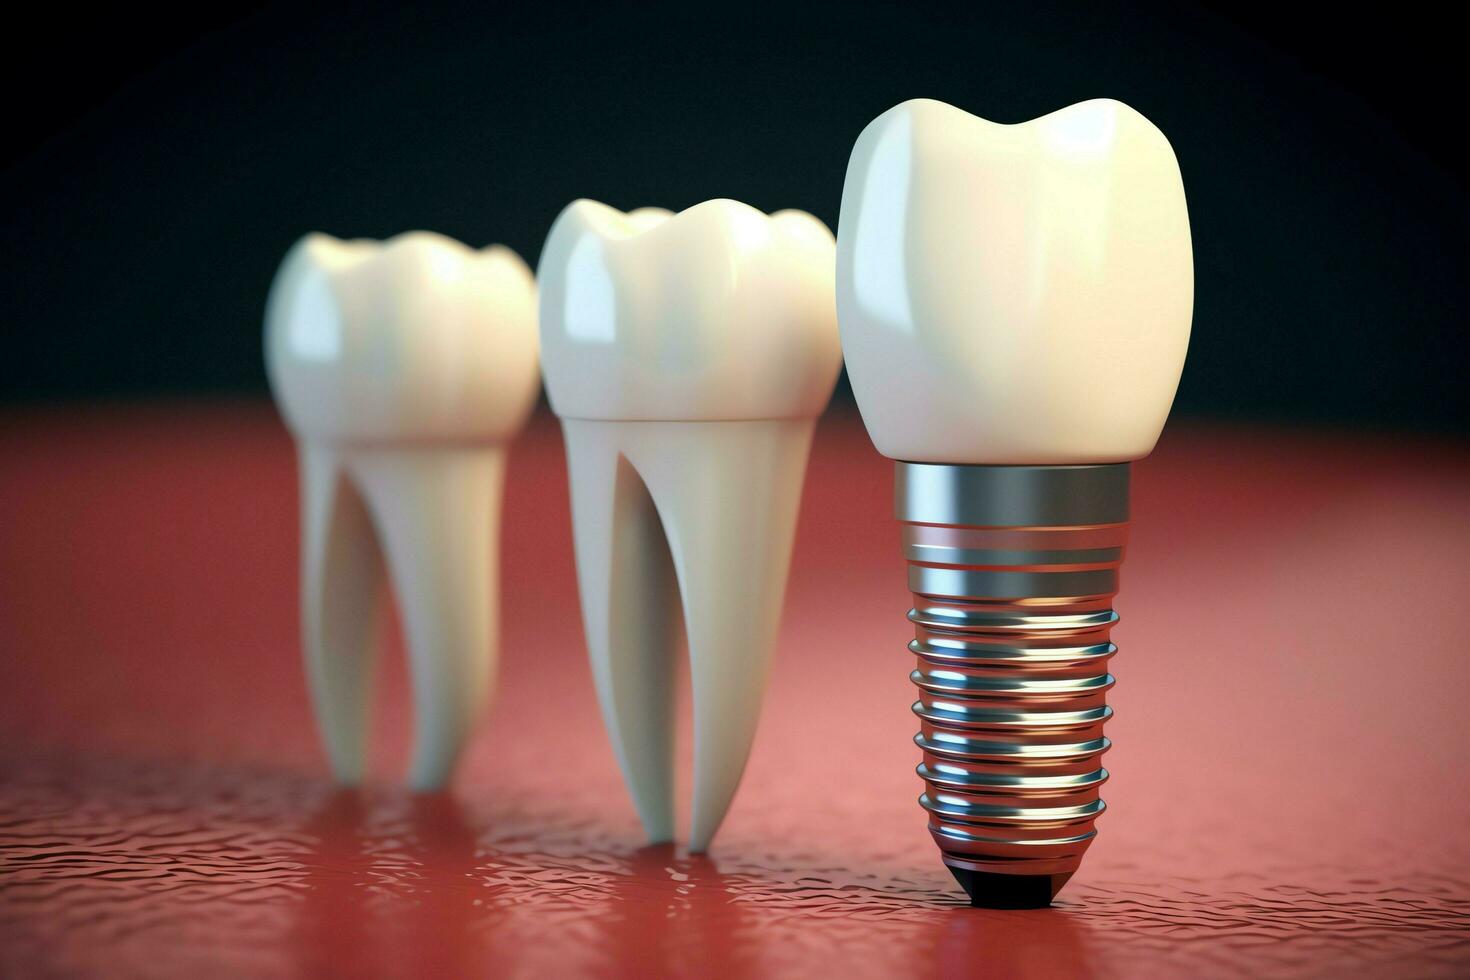 cerca arriba de un dental diente implante o sano humano dientes. blanco esmalte y dental implantes cirugía concepto por ai generado foto